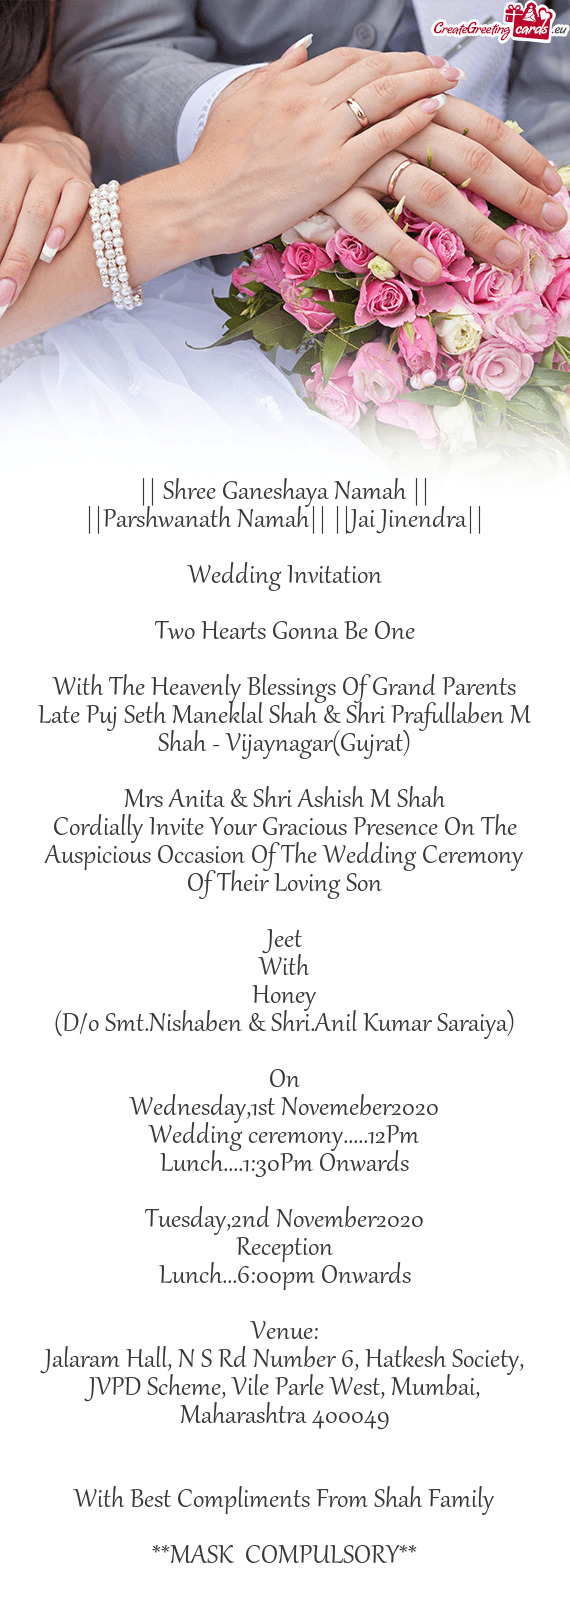 Late Puj Seth Maneklal Shah & Shri Prafullaben M Shah - Vijaynagar(Gujrat)